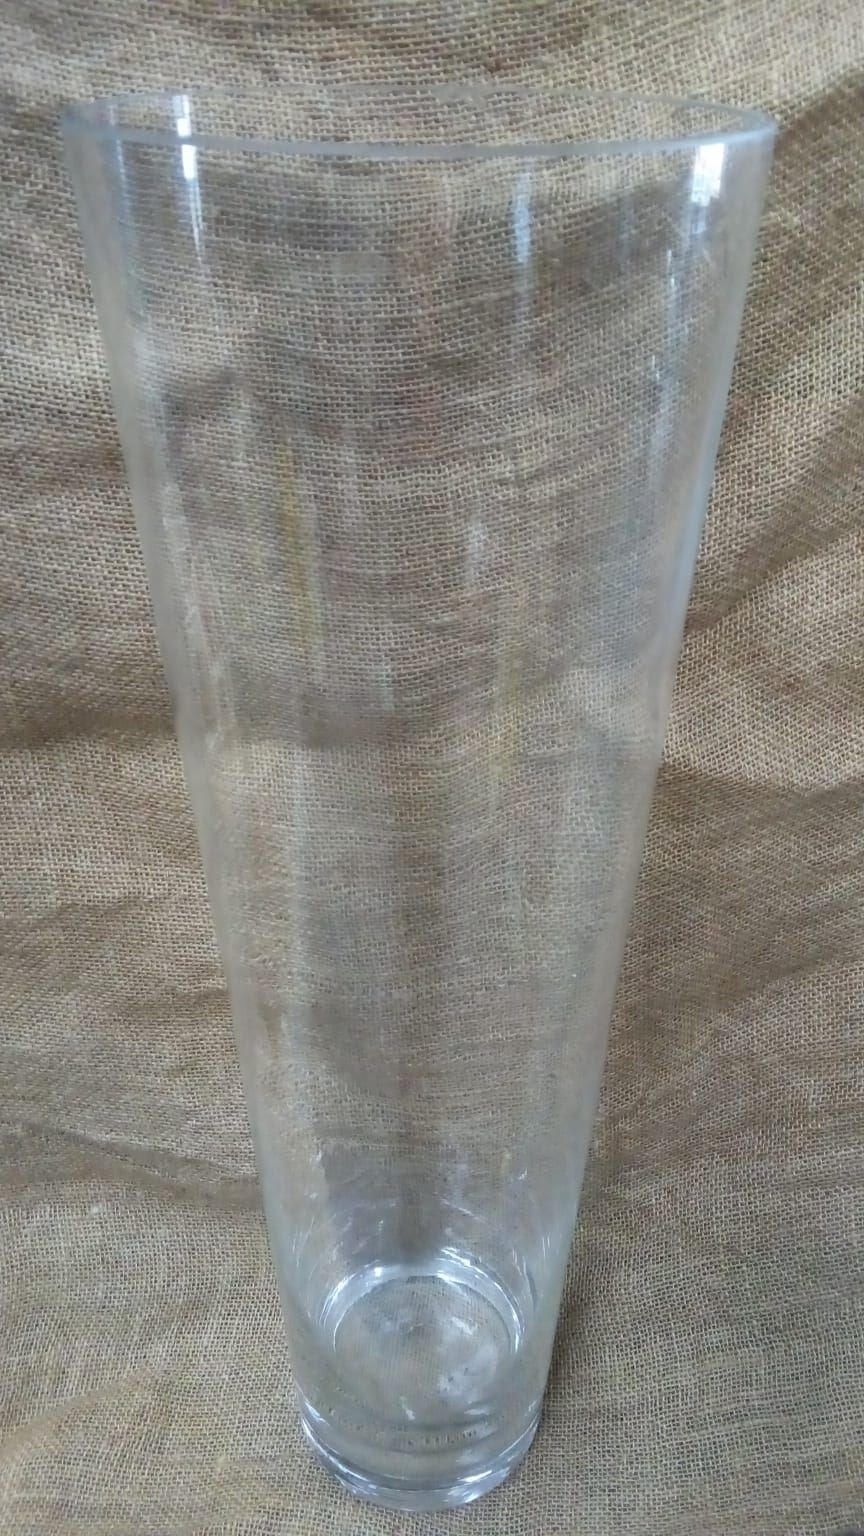 Jarrón de Cristal 60cm x 15cm x 20cm - Imagen 1